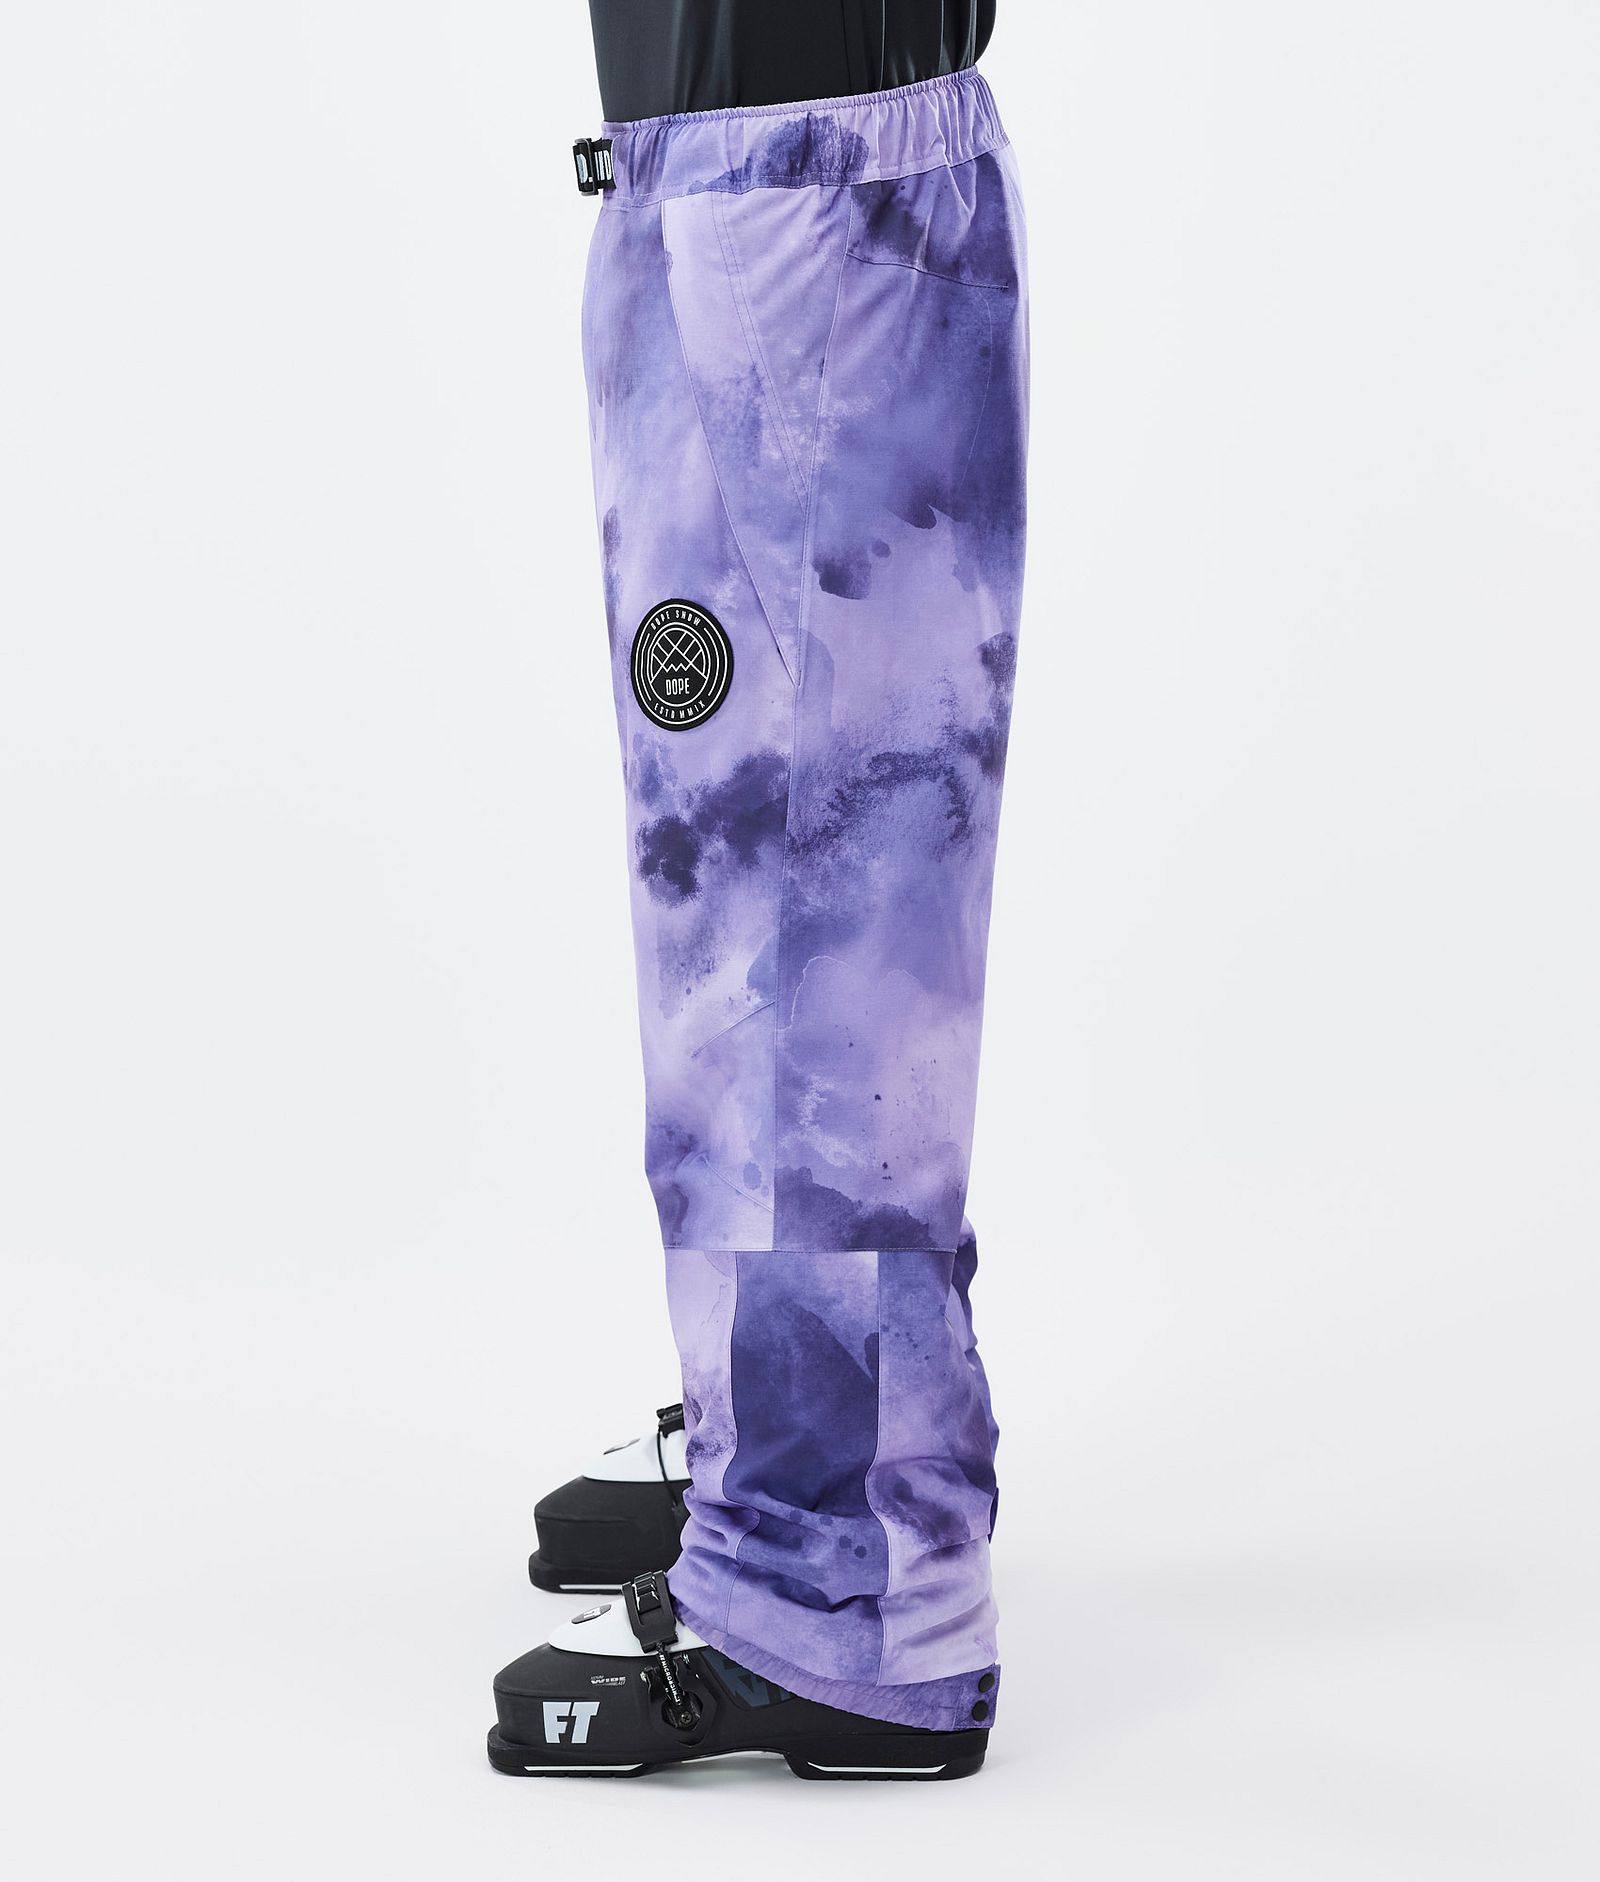 Blizzard Pantaloni Sci Uomo Liquid Violet, Immagine 3 di 5